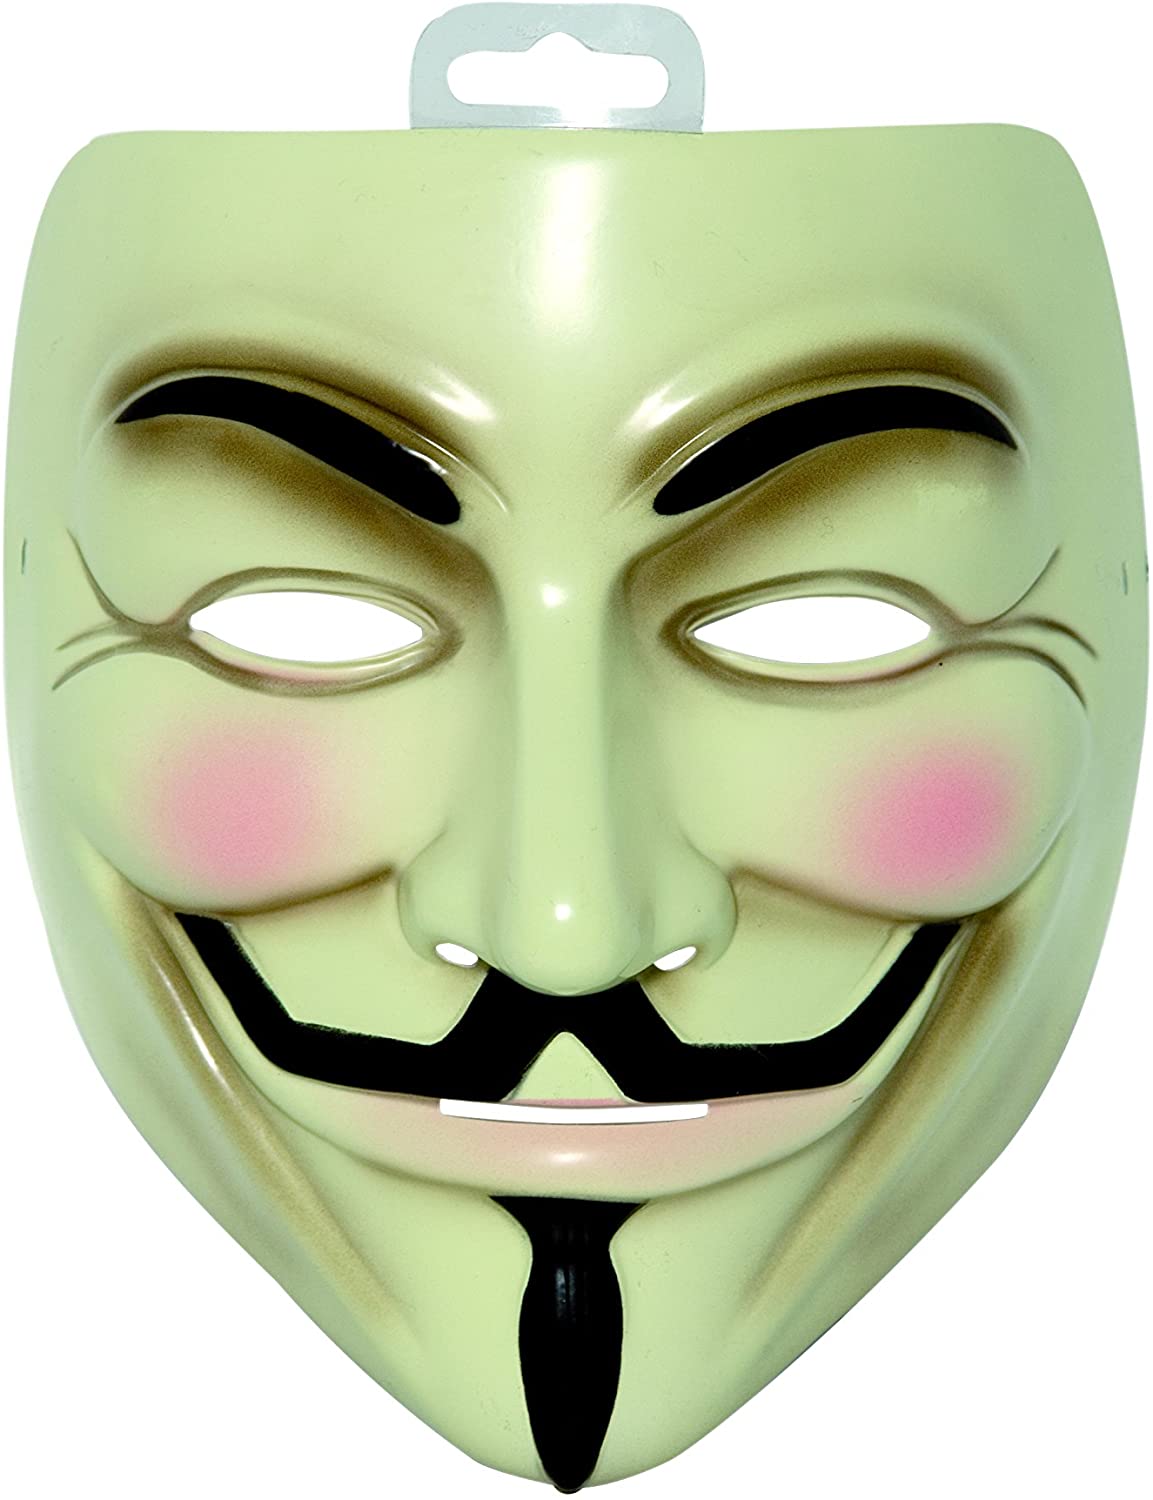 V pour Vendetta Mask